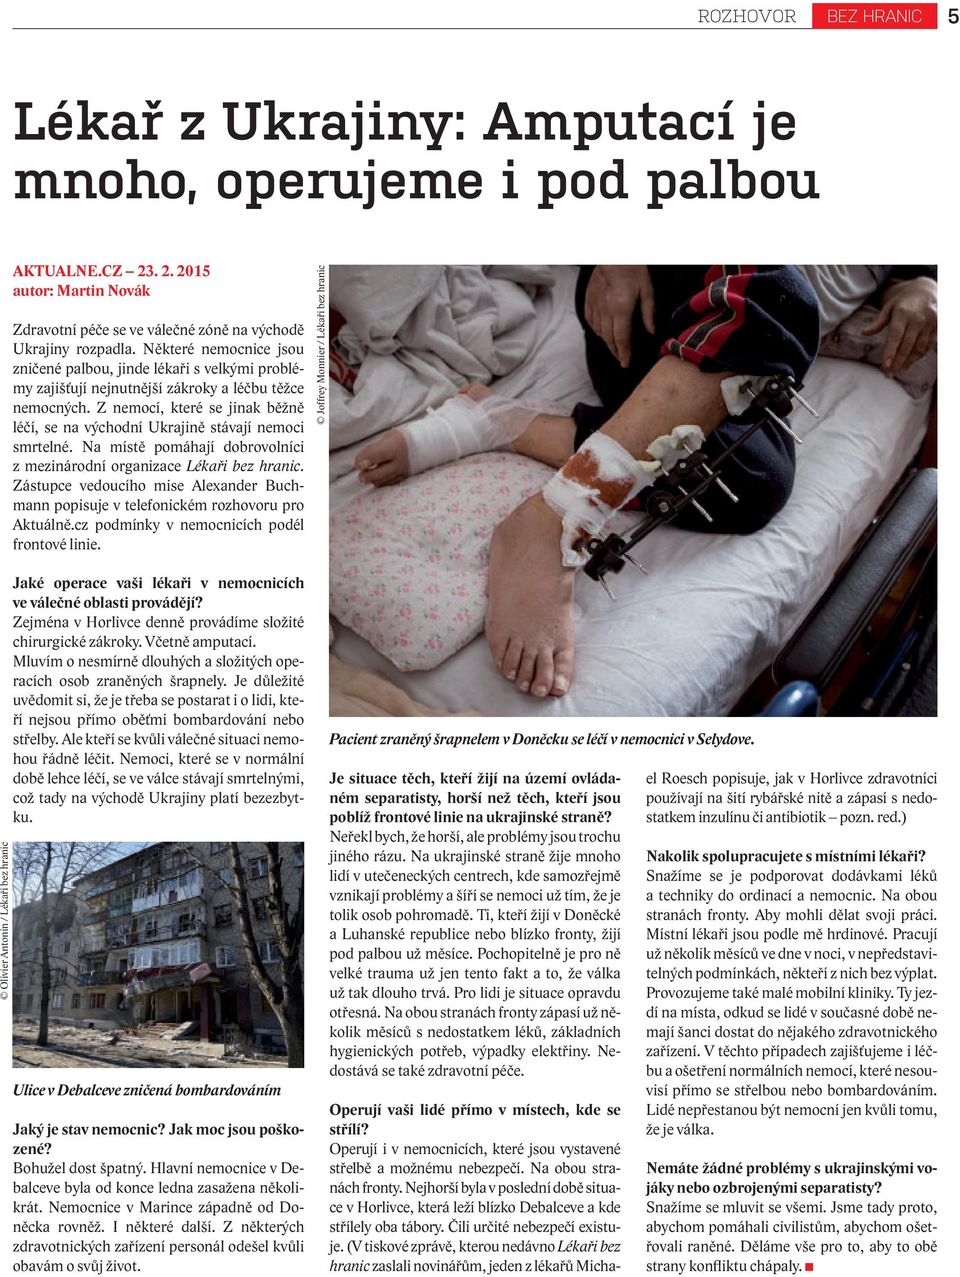 Z nemocí, které se jinak běžně léčí, se na východní Ukrajině stávají nemoci smrtelné. Na místě pomáhají dobrovolníci z mezinárodní organizace Lékaři bez hranic.